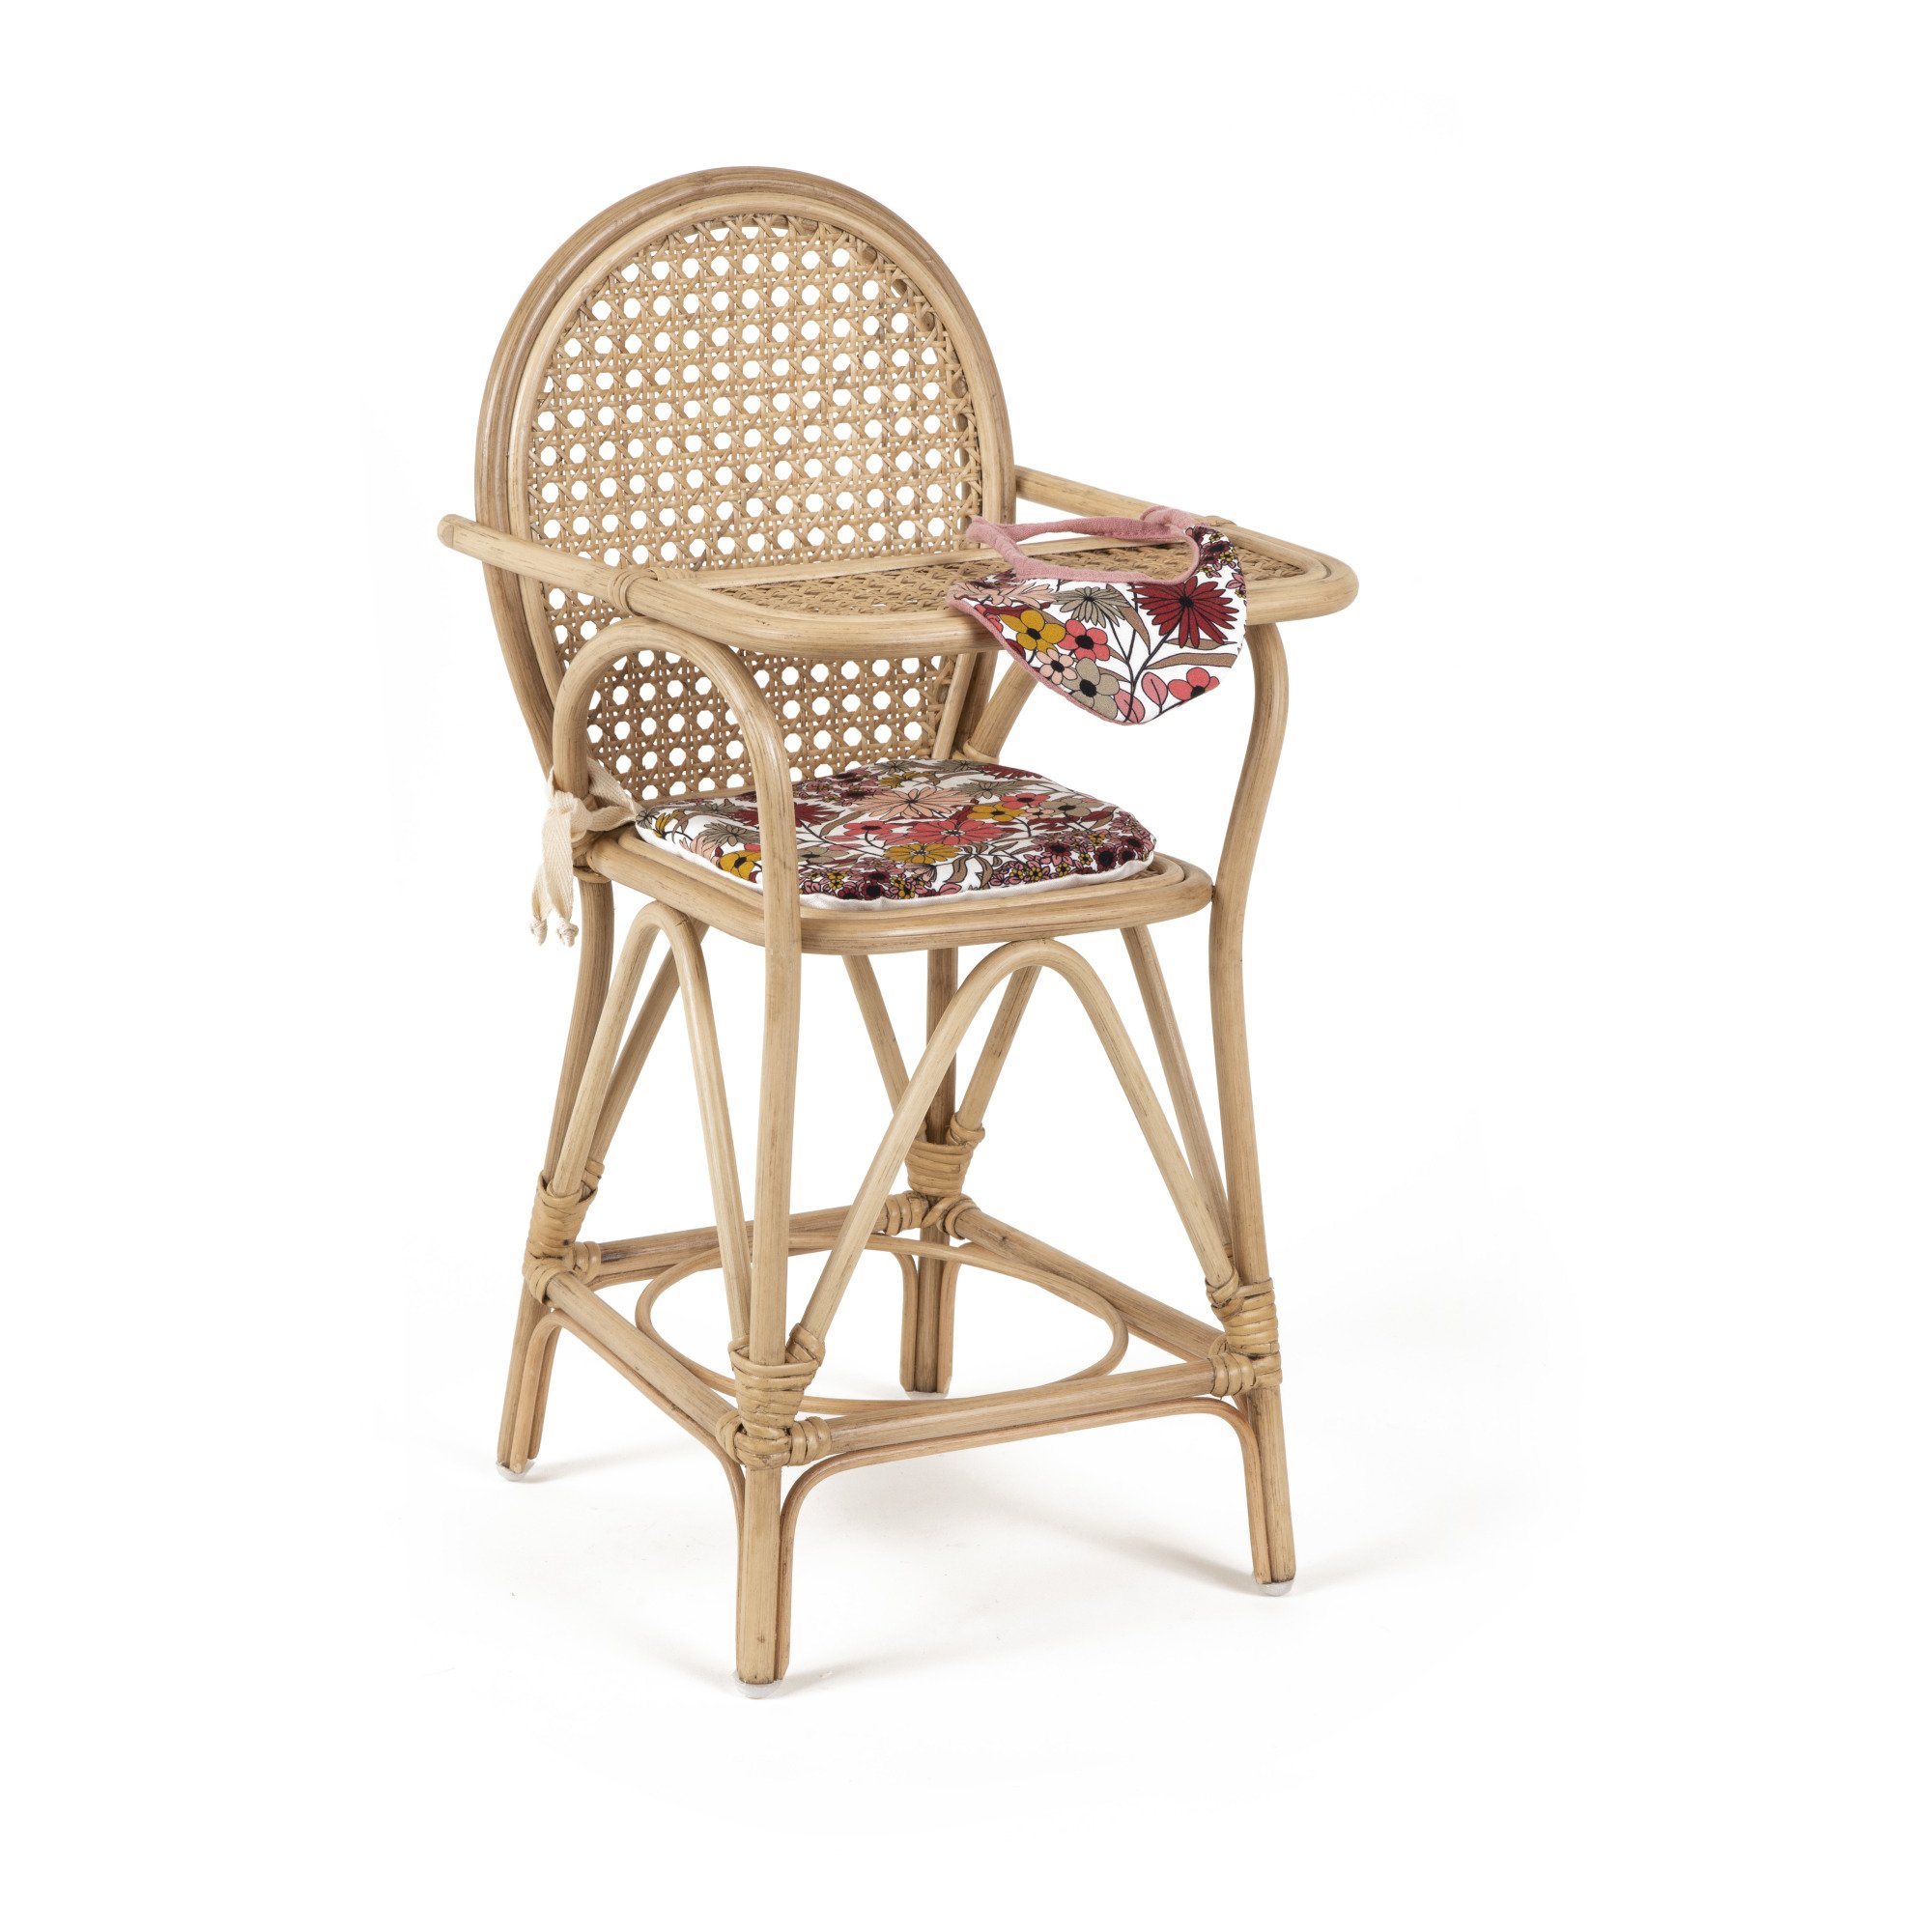 chaise-haute-pour-poupee-en-rotin-raya-flora-et-ses-accessoires-idees-cadeaux-0-3-ans-noemiememories.jpeg